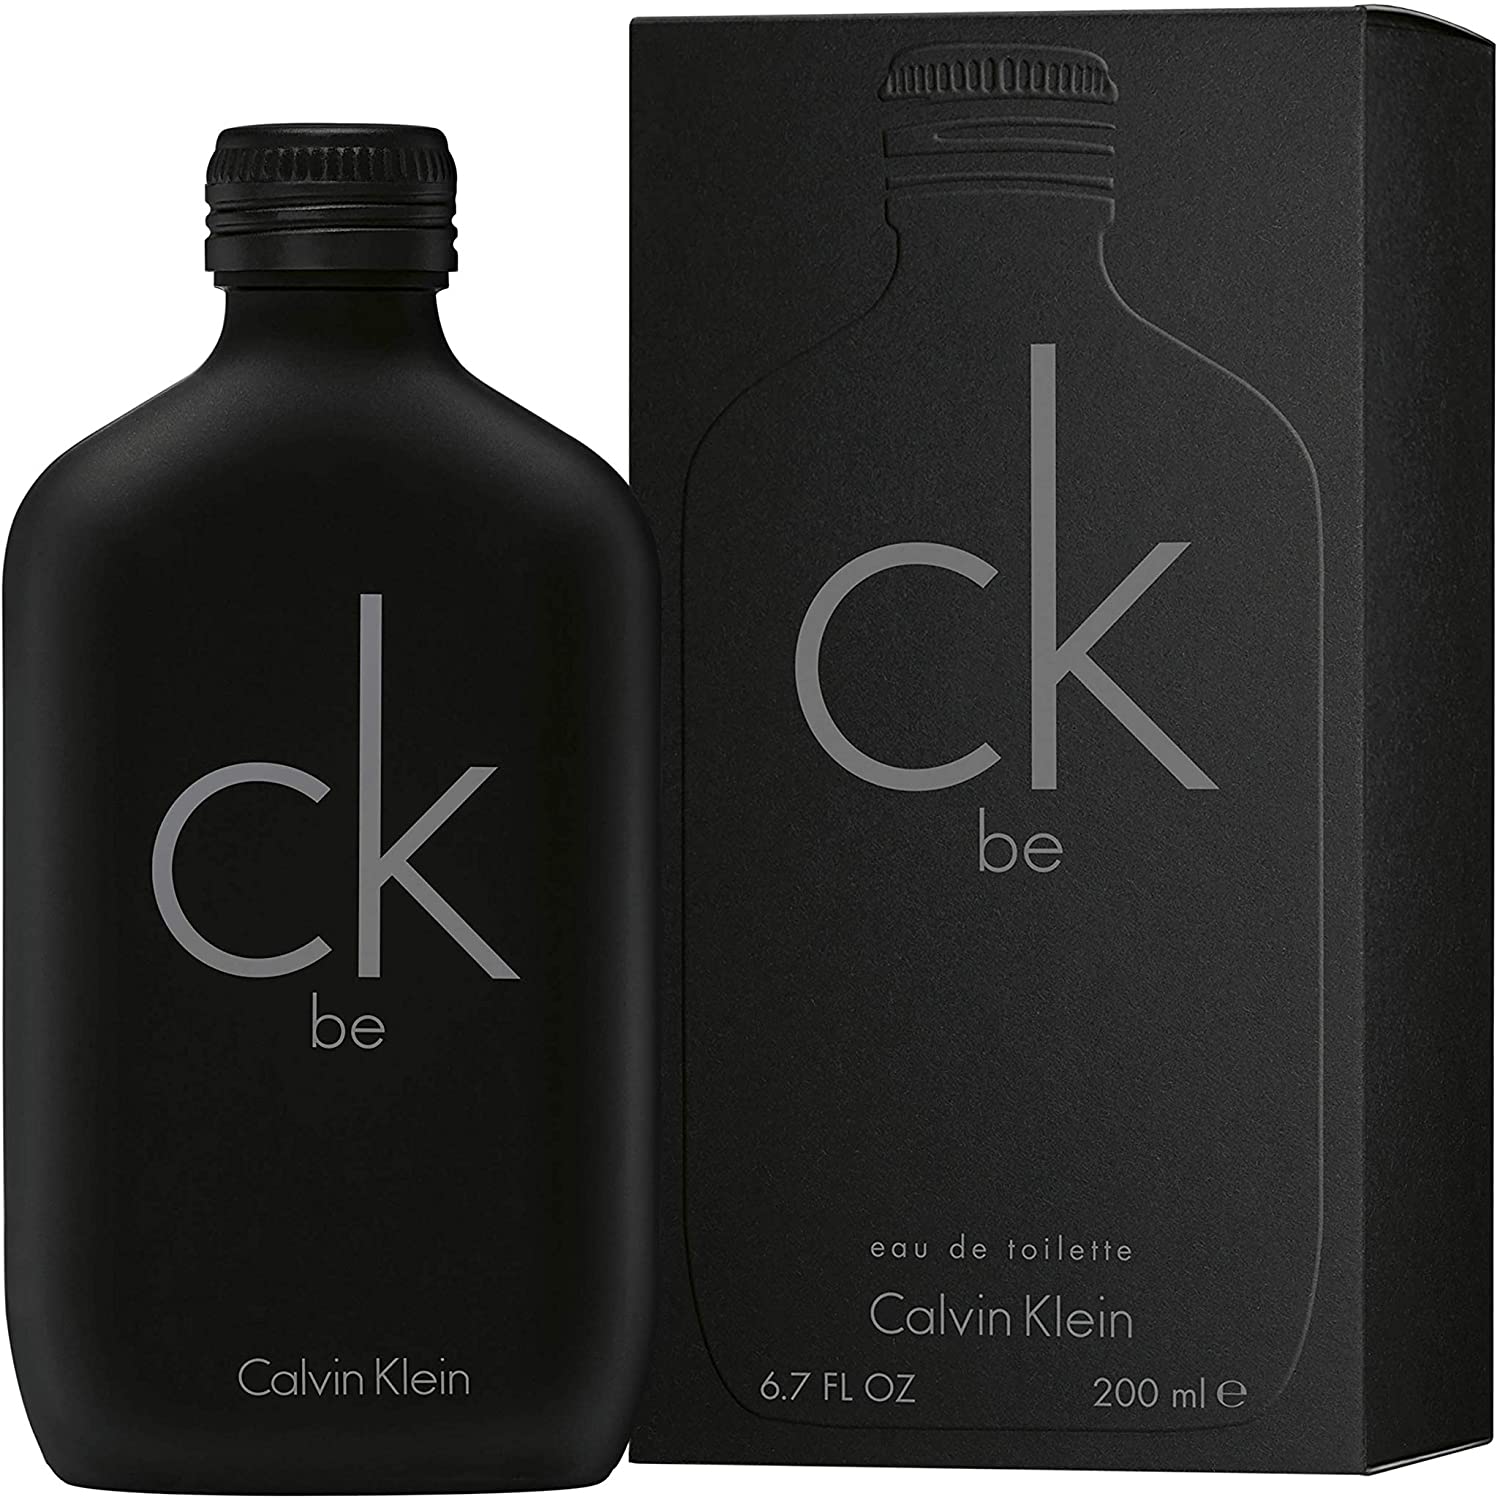 Calvin Klein Ck Be Eau De Toilette 200Ml,